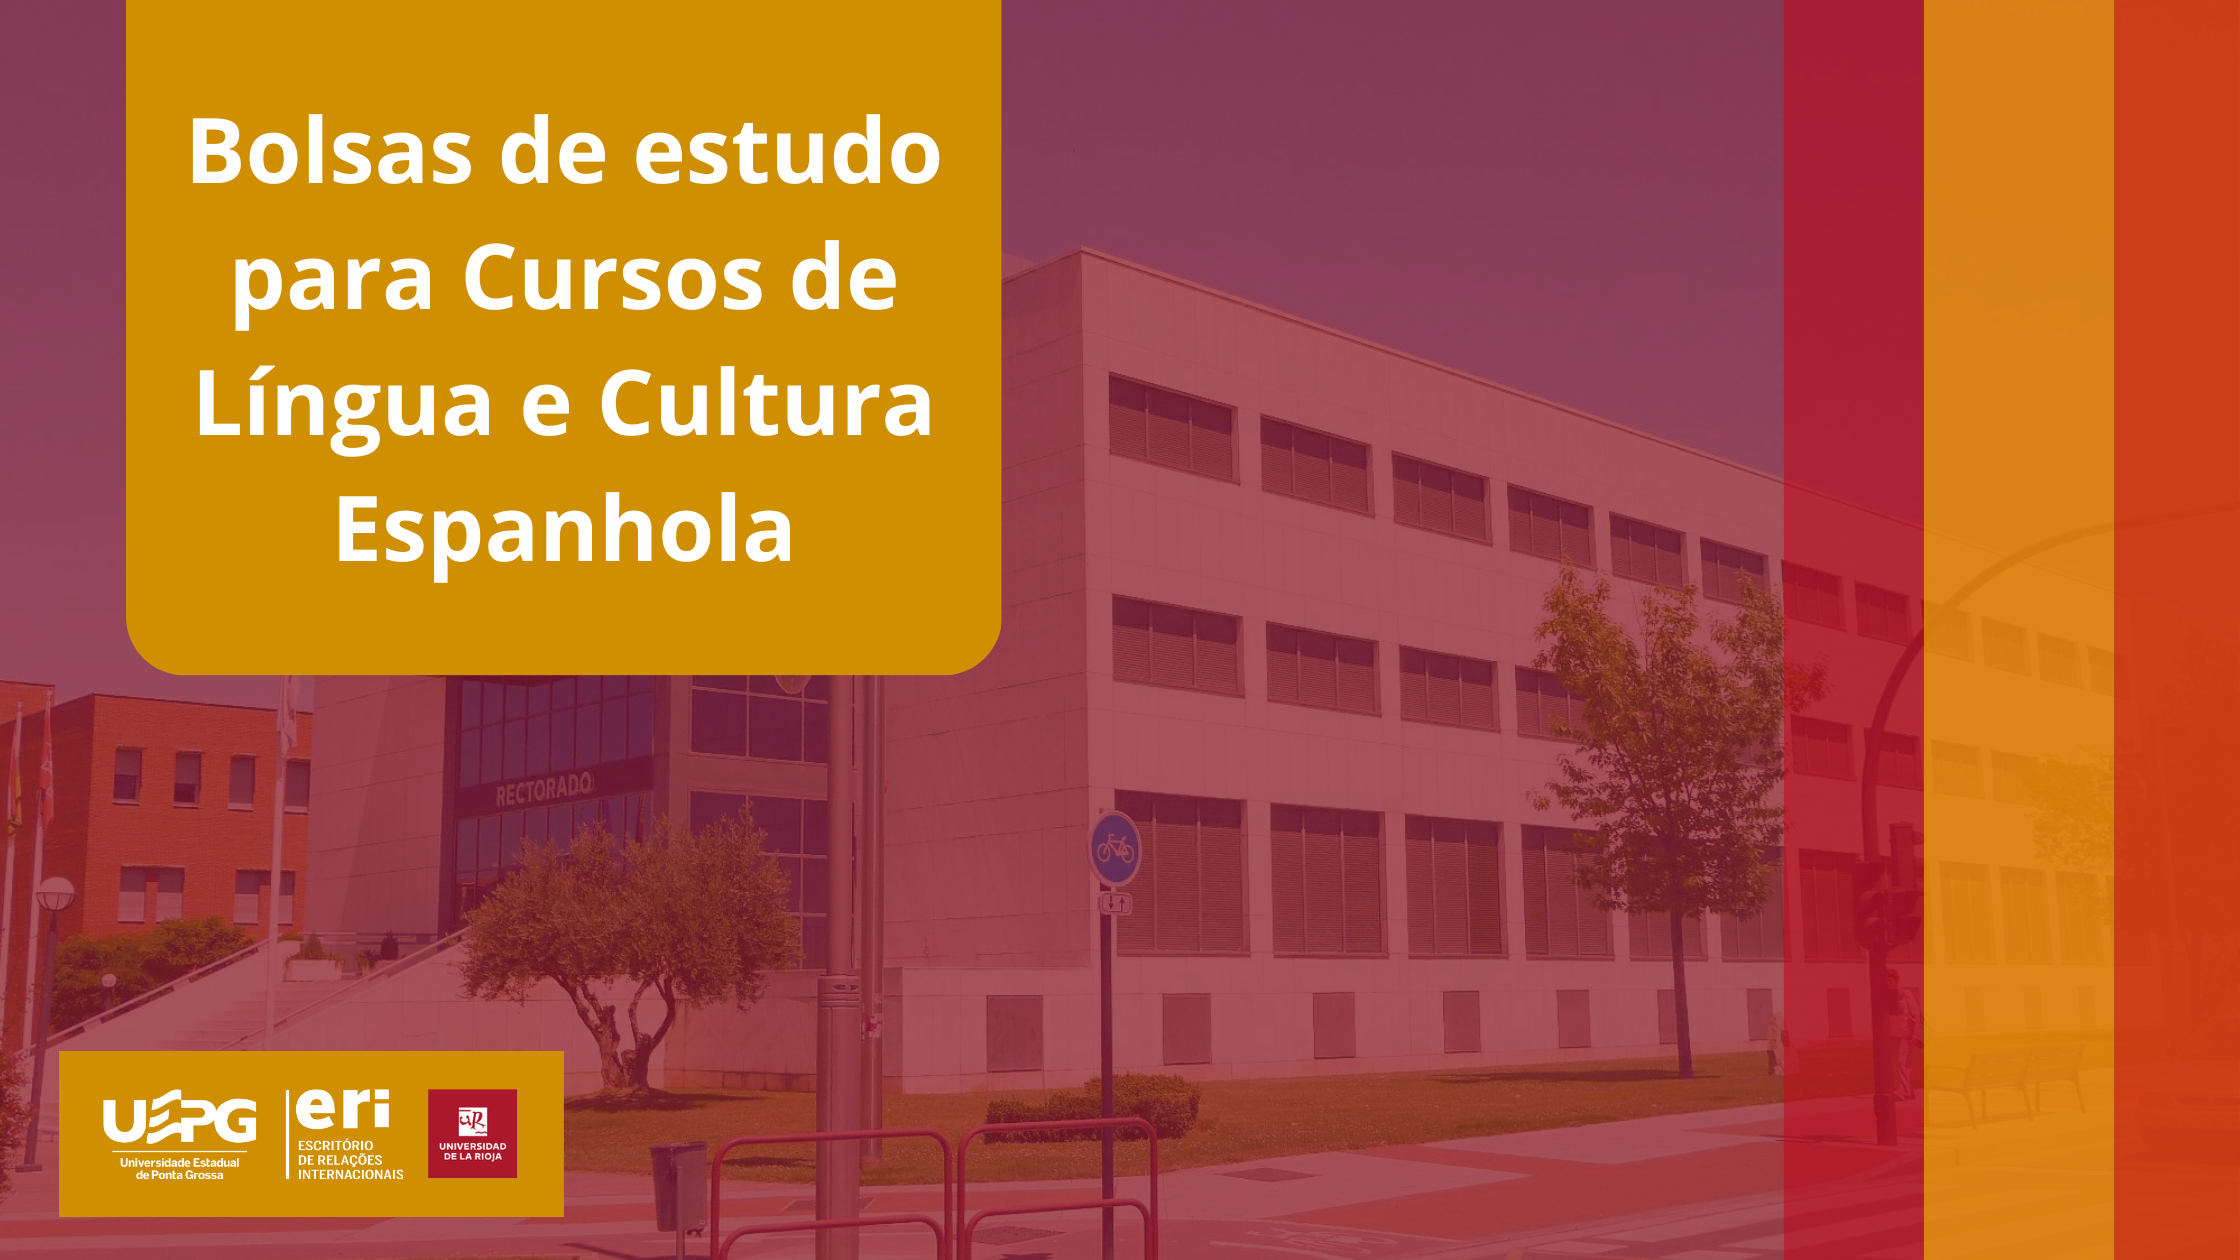 Bolsas de estudo – Cursos de Língua e Cultura Espanhola da Universidade de La Rioja